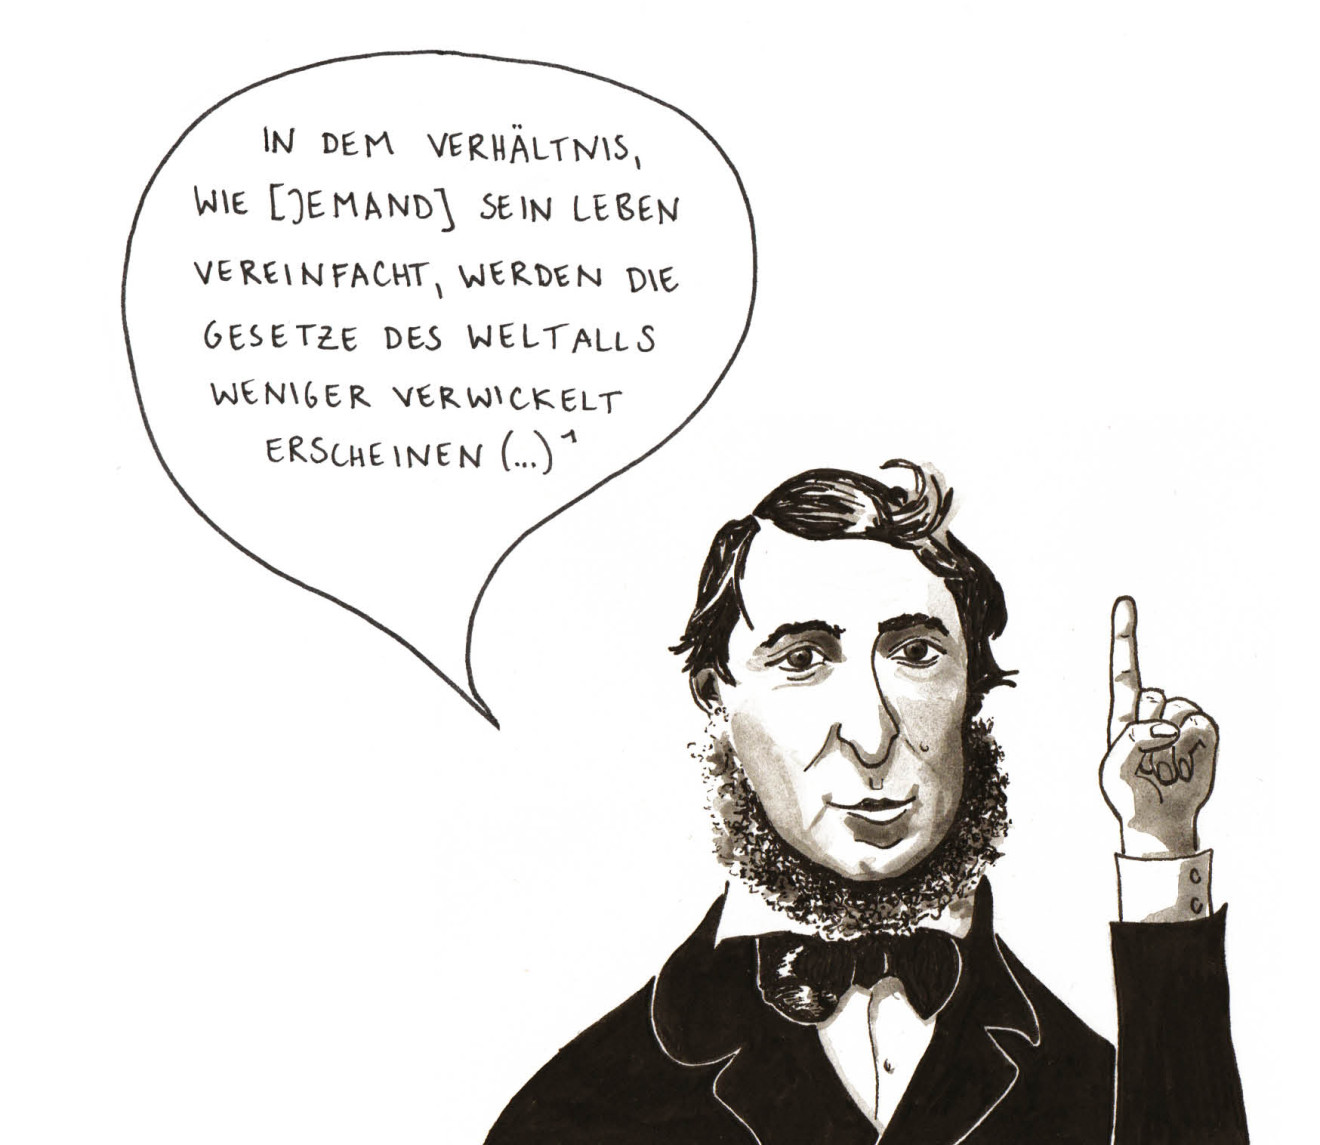 Portrait-Zeichnung von Henry David Thoreau. Er sagt: In dem Verhältnis wie jemand sein Leben vereinfacht, werden die Gesetze des Weltalls weniger verwickelt erscheinen.